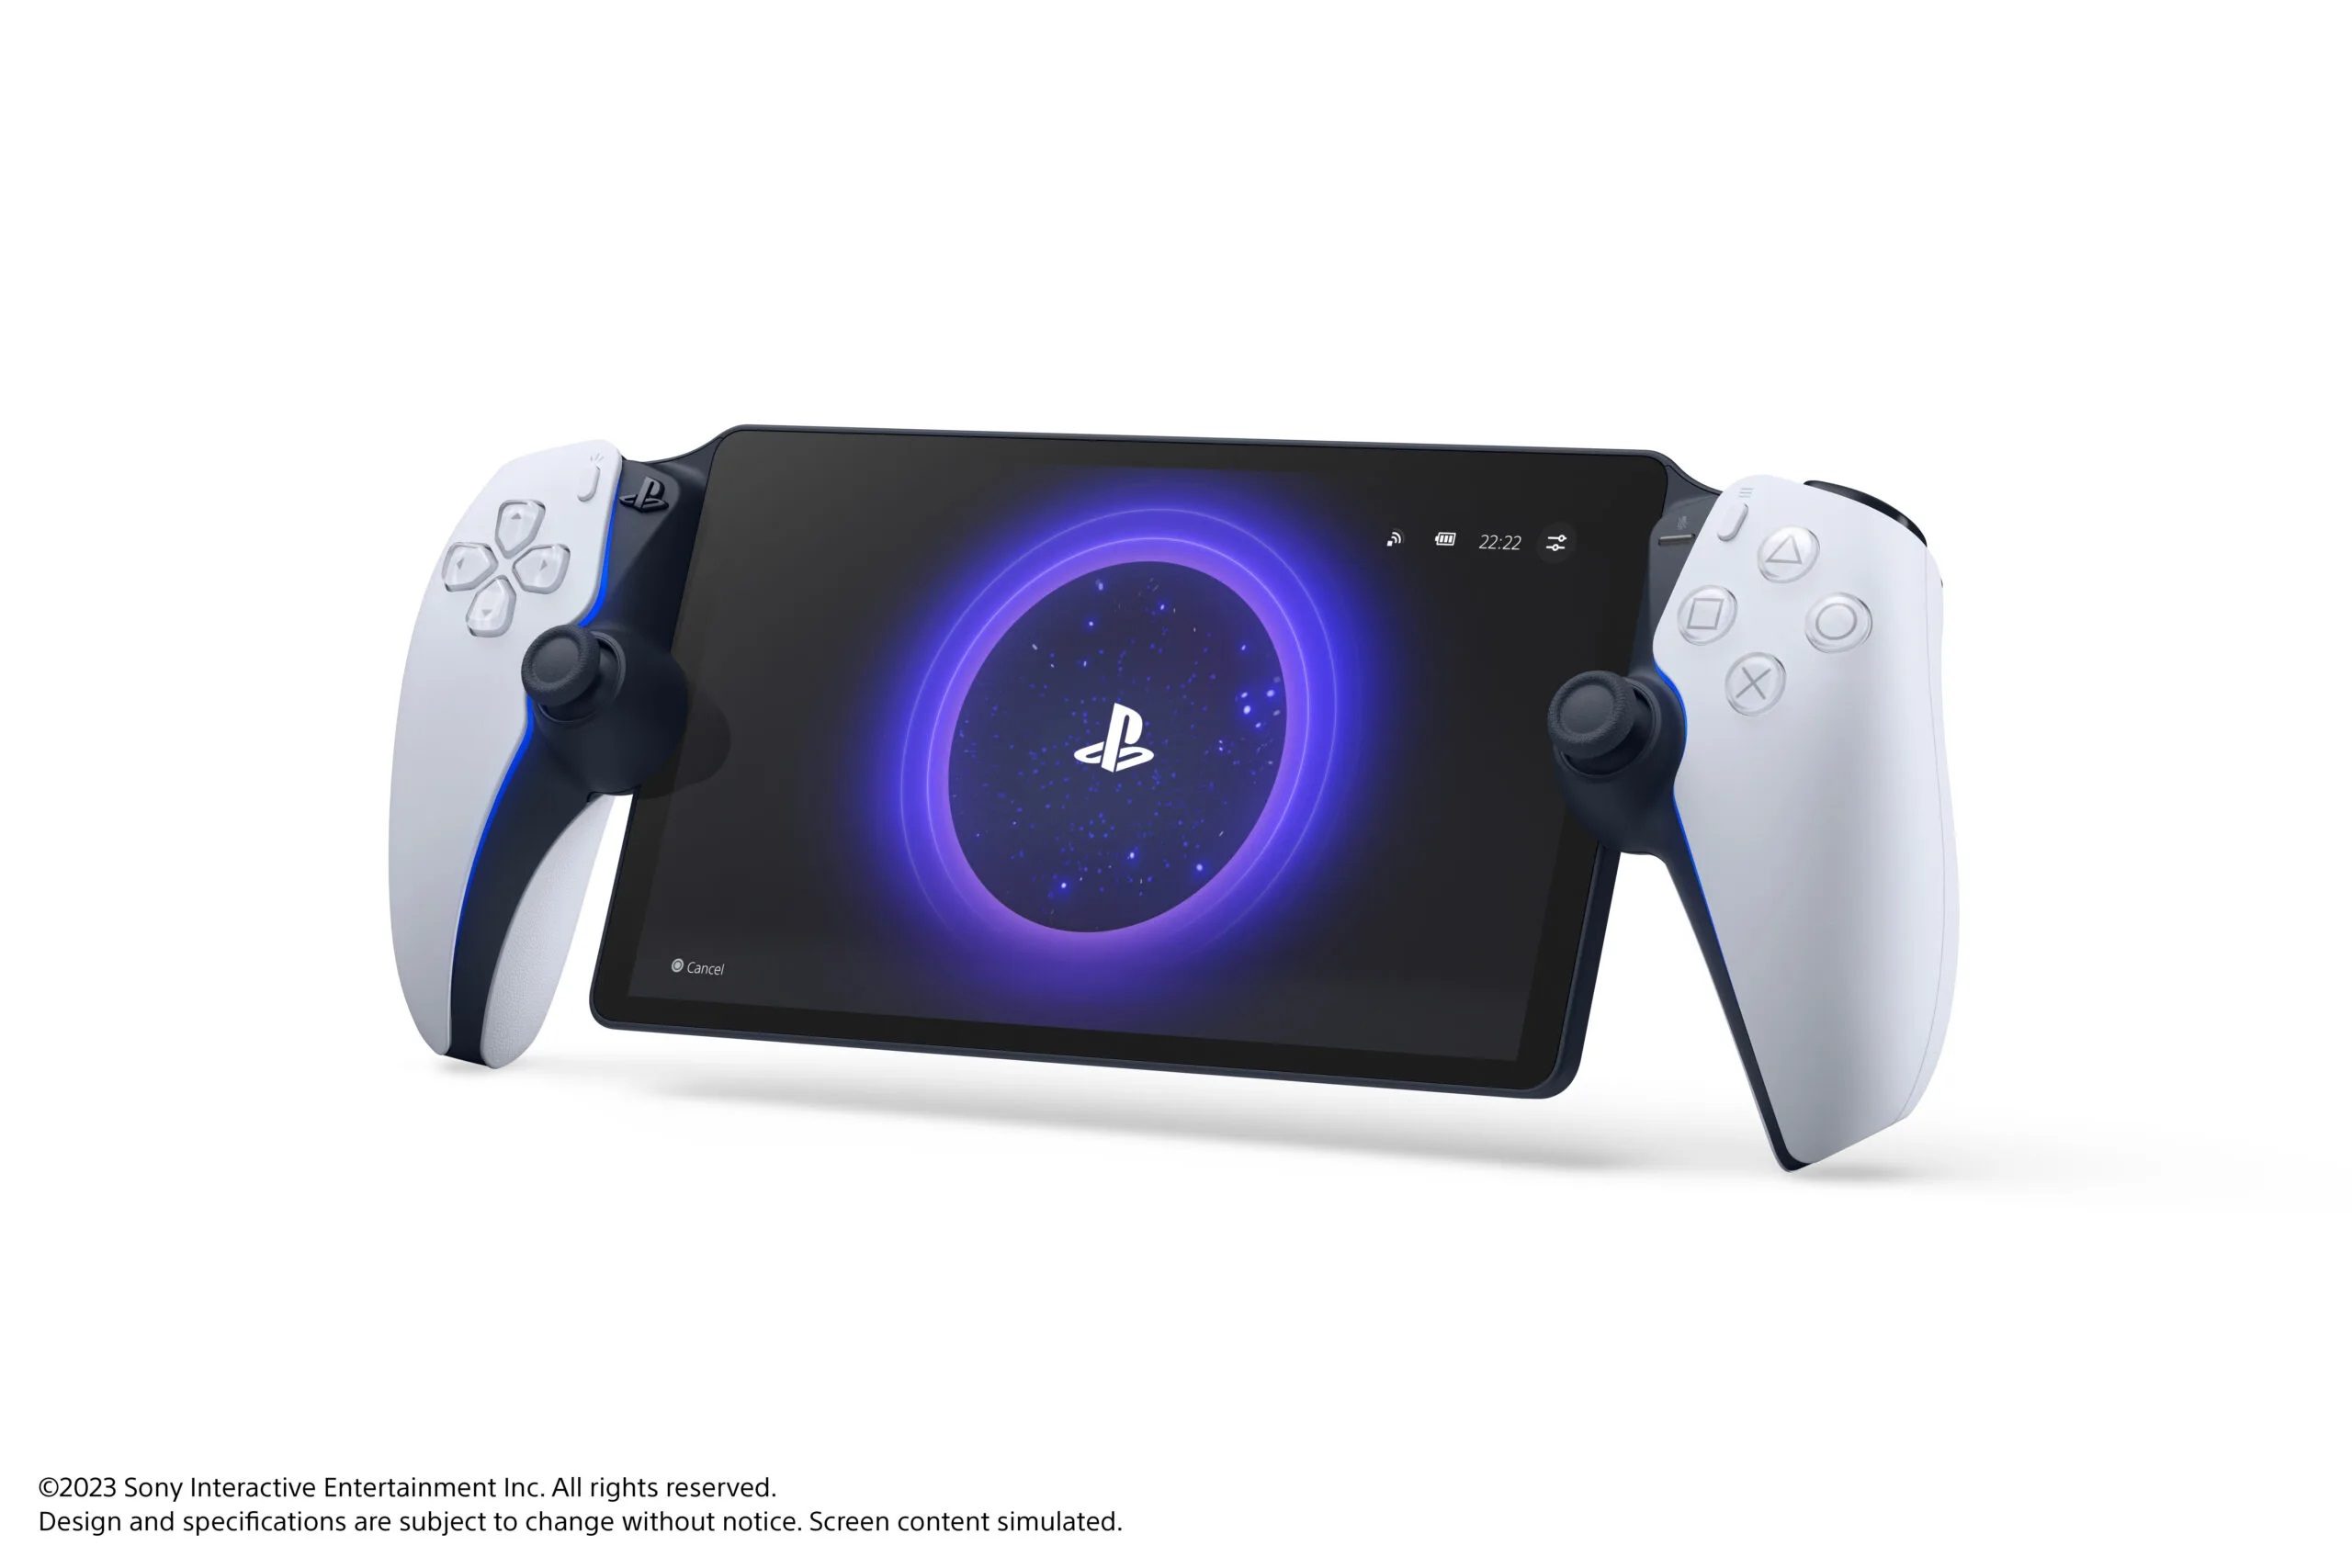 PlayStation VR : Sony explique à quoi sert le boîtier supplémentaire